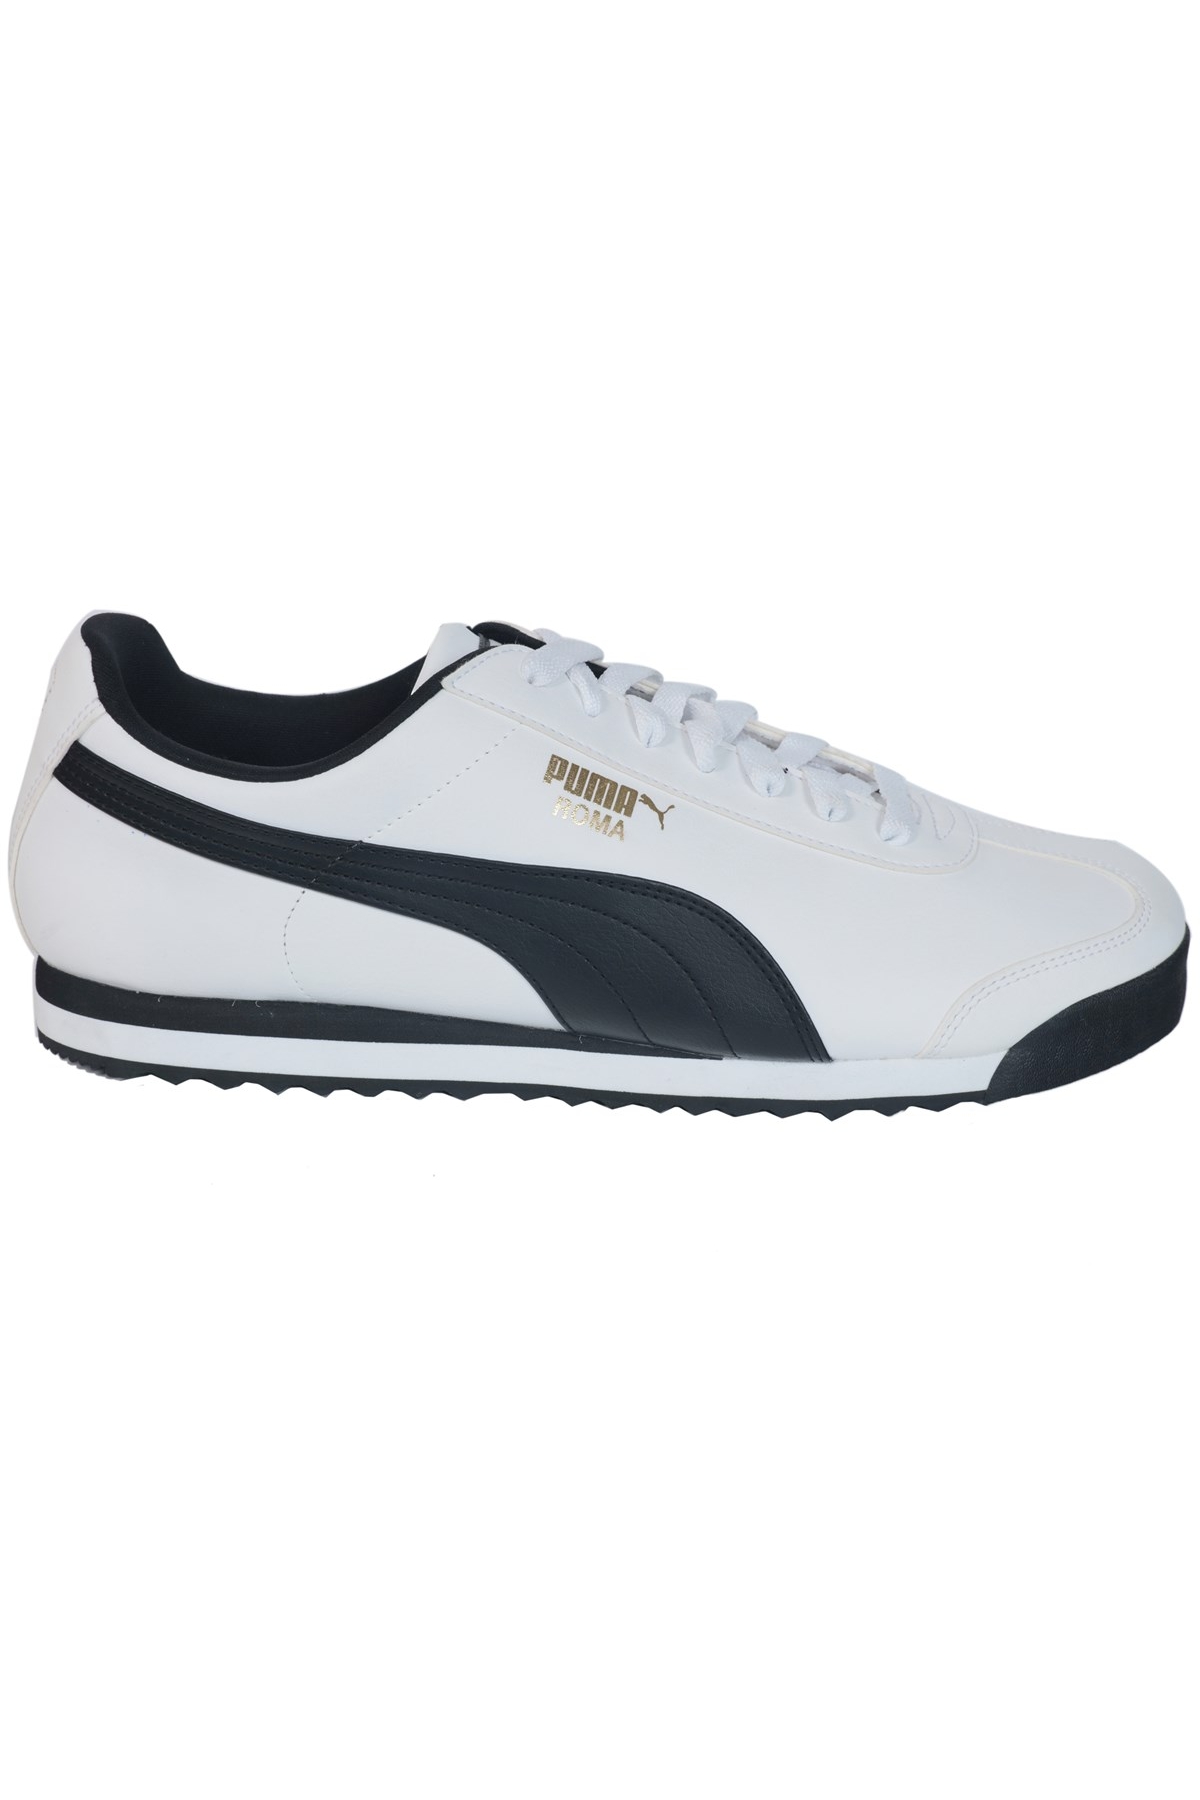 Puma Roma Basic Beyaz Spor Ayakkabı 353572 12 201046075 Flo